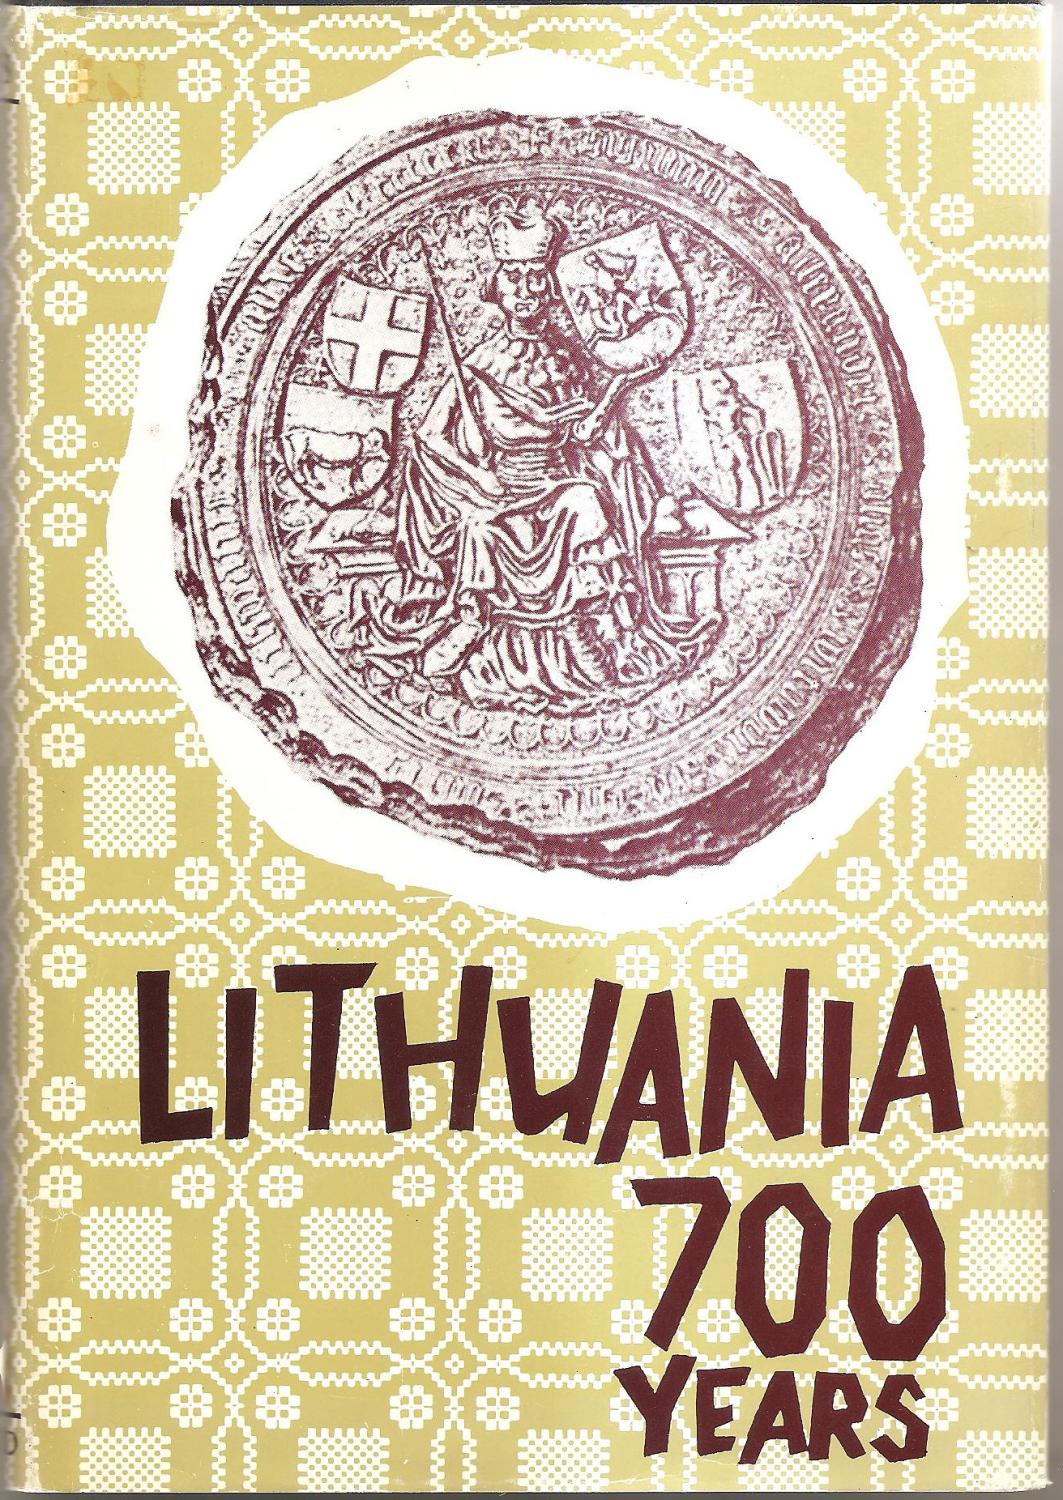 Lithuania: 700 Years - Albertas Gerutis Editor